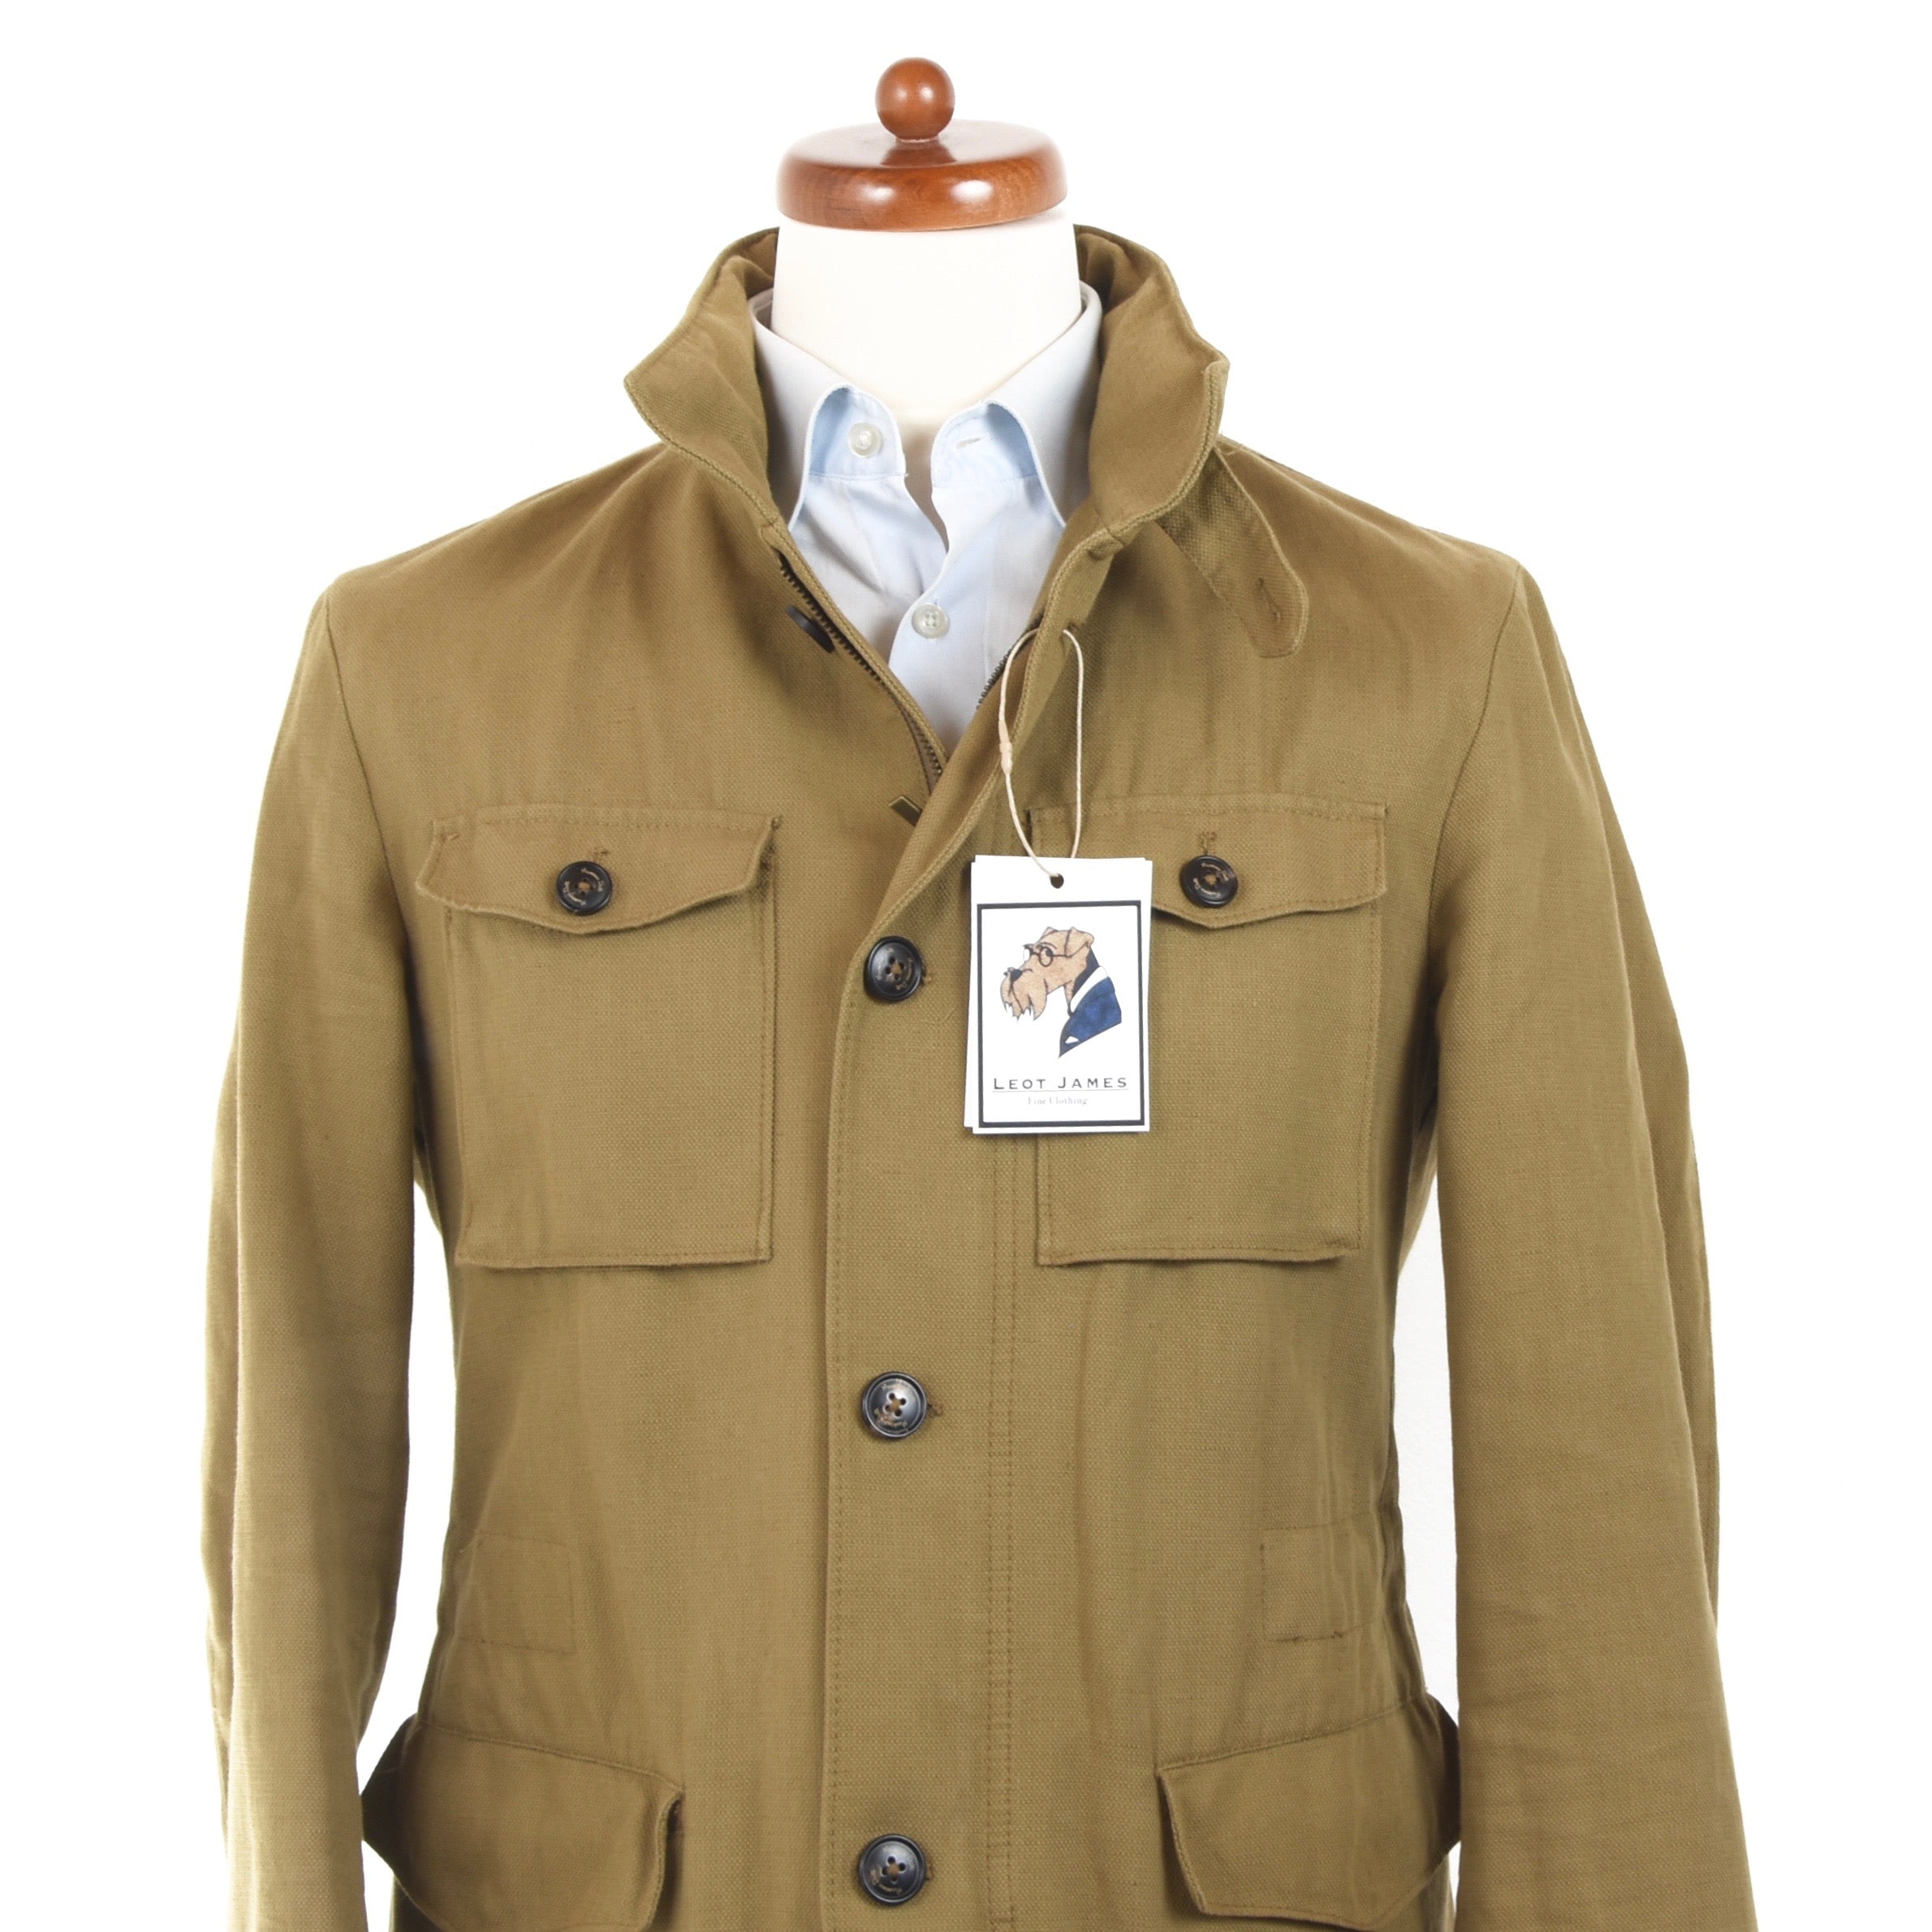 Massimo Dutti Cotton-Linen Safari Jacket Size M - Tan – Leot James